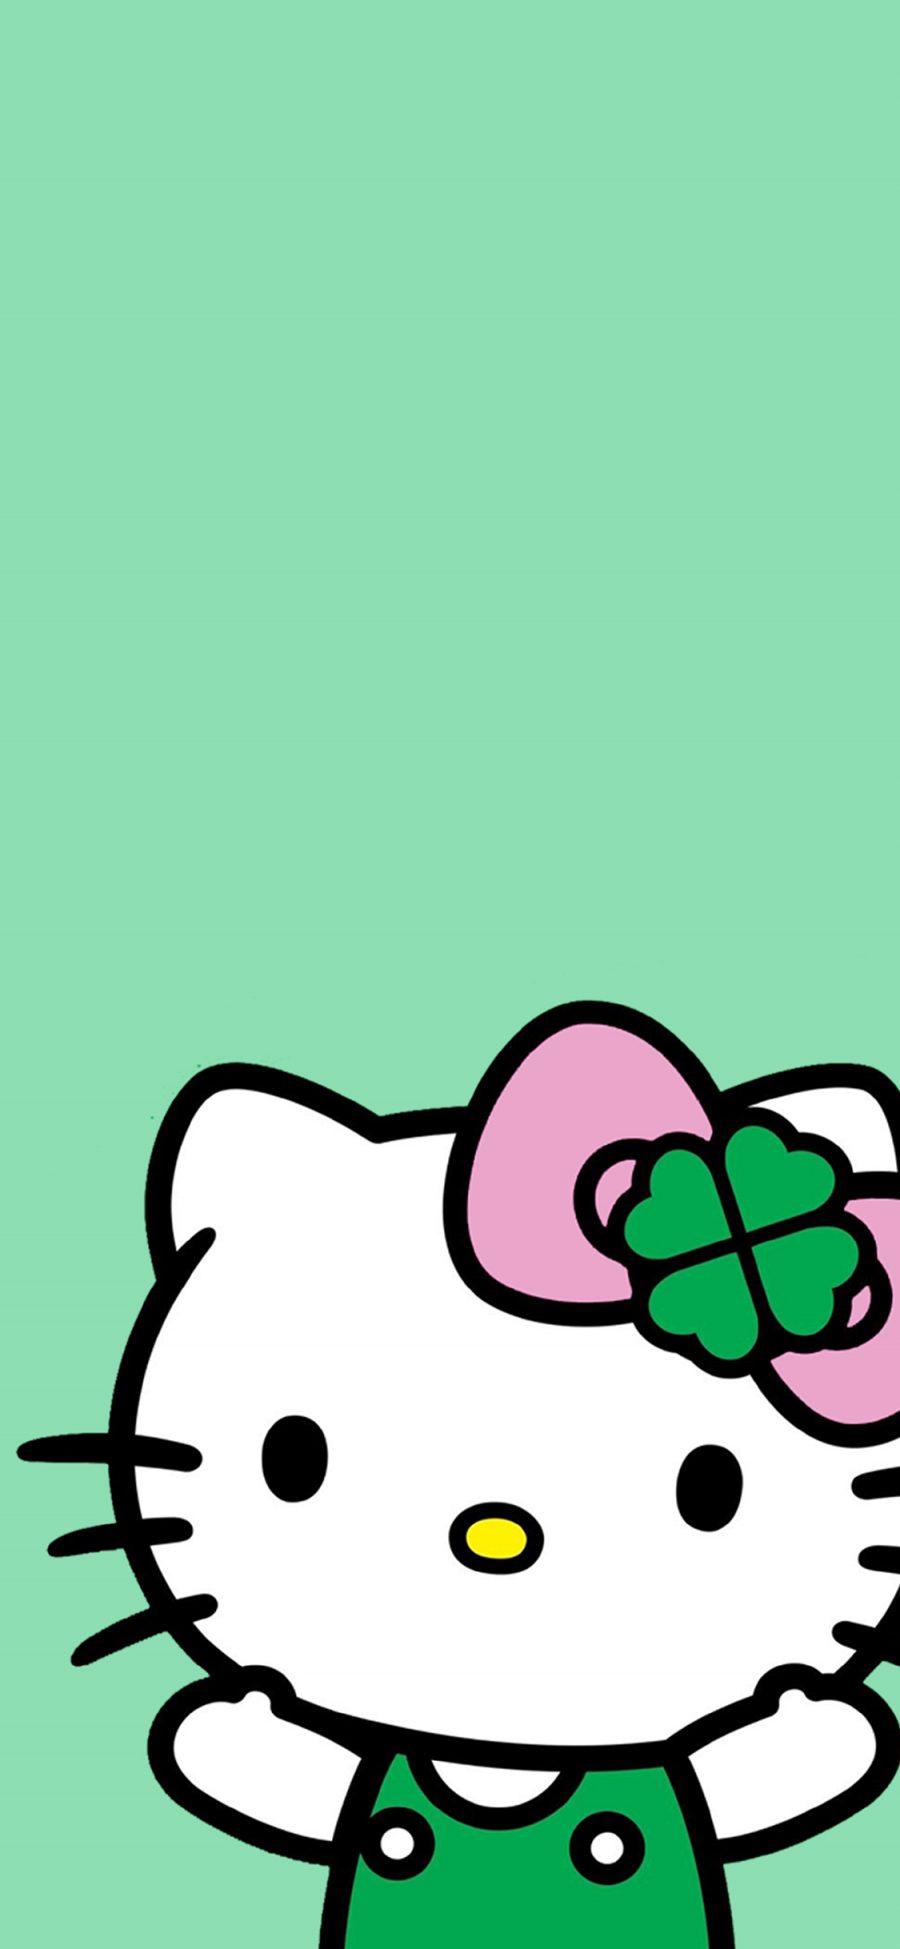 [2436×1125]Hello kitty 凯特猫 动画 卡通 绿色 蝴蝶结 苹果手机动漫壁纸图片